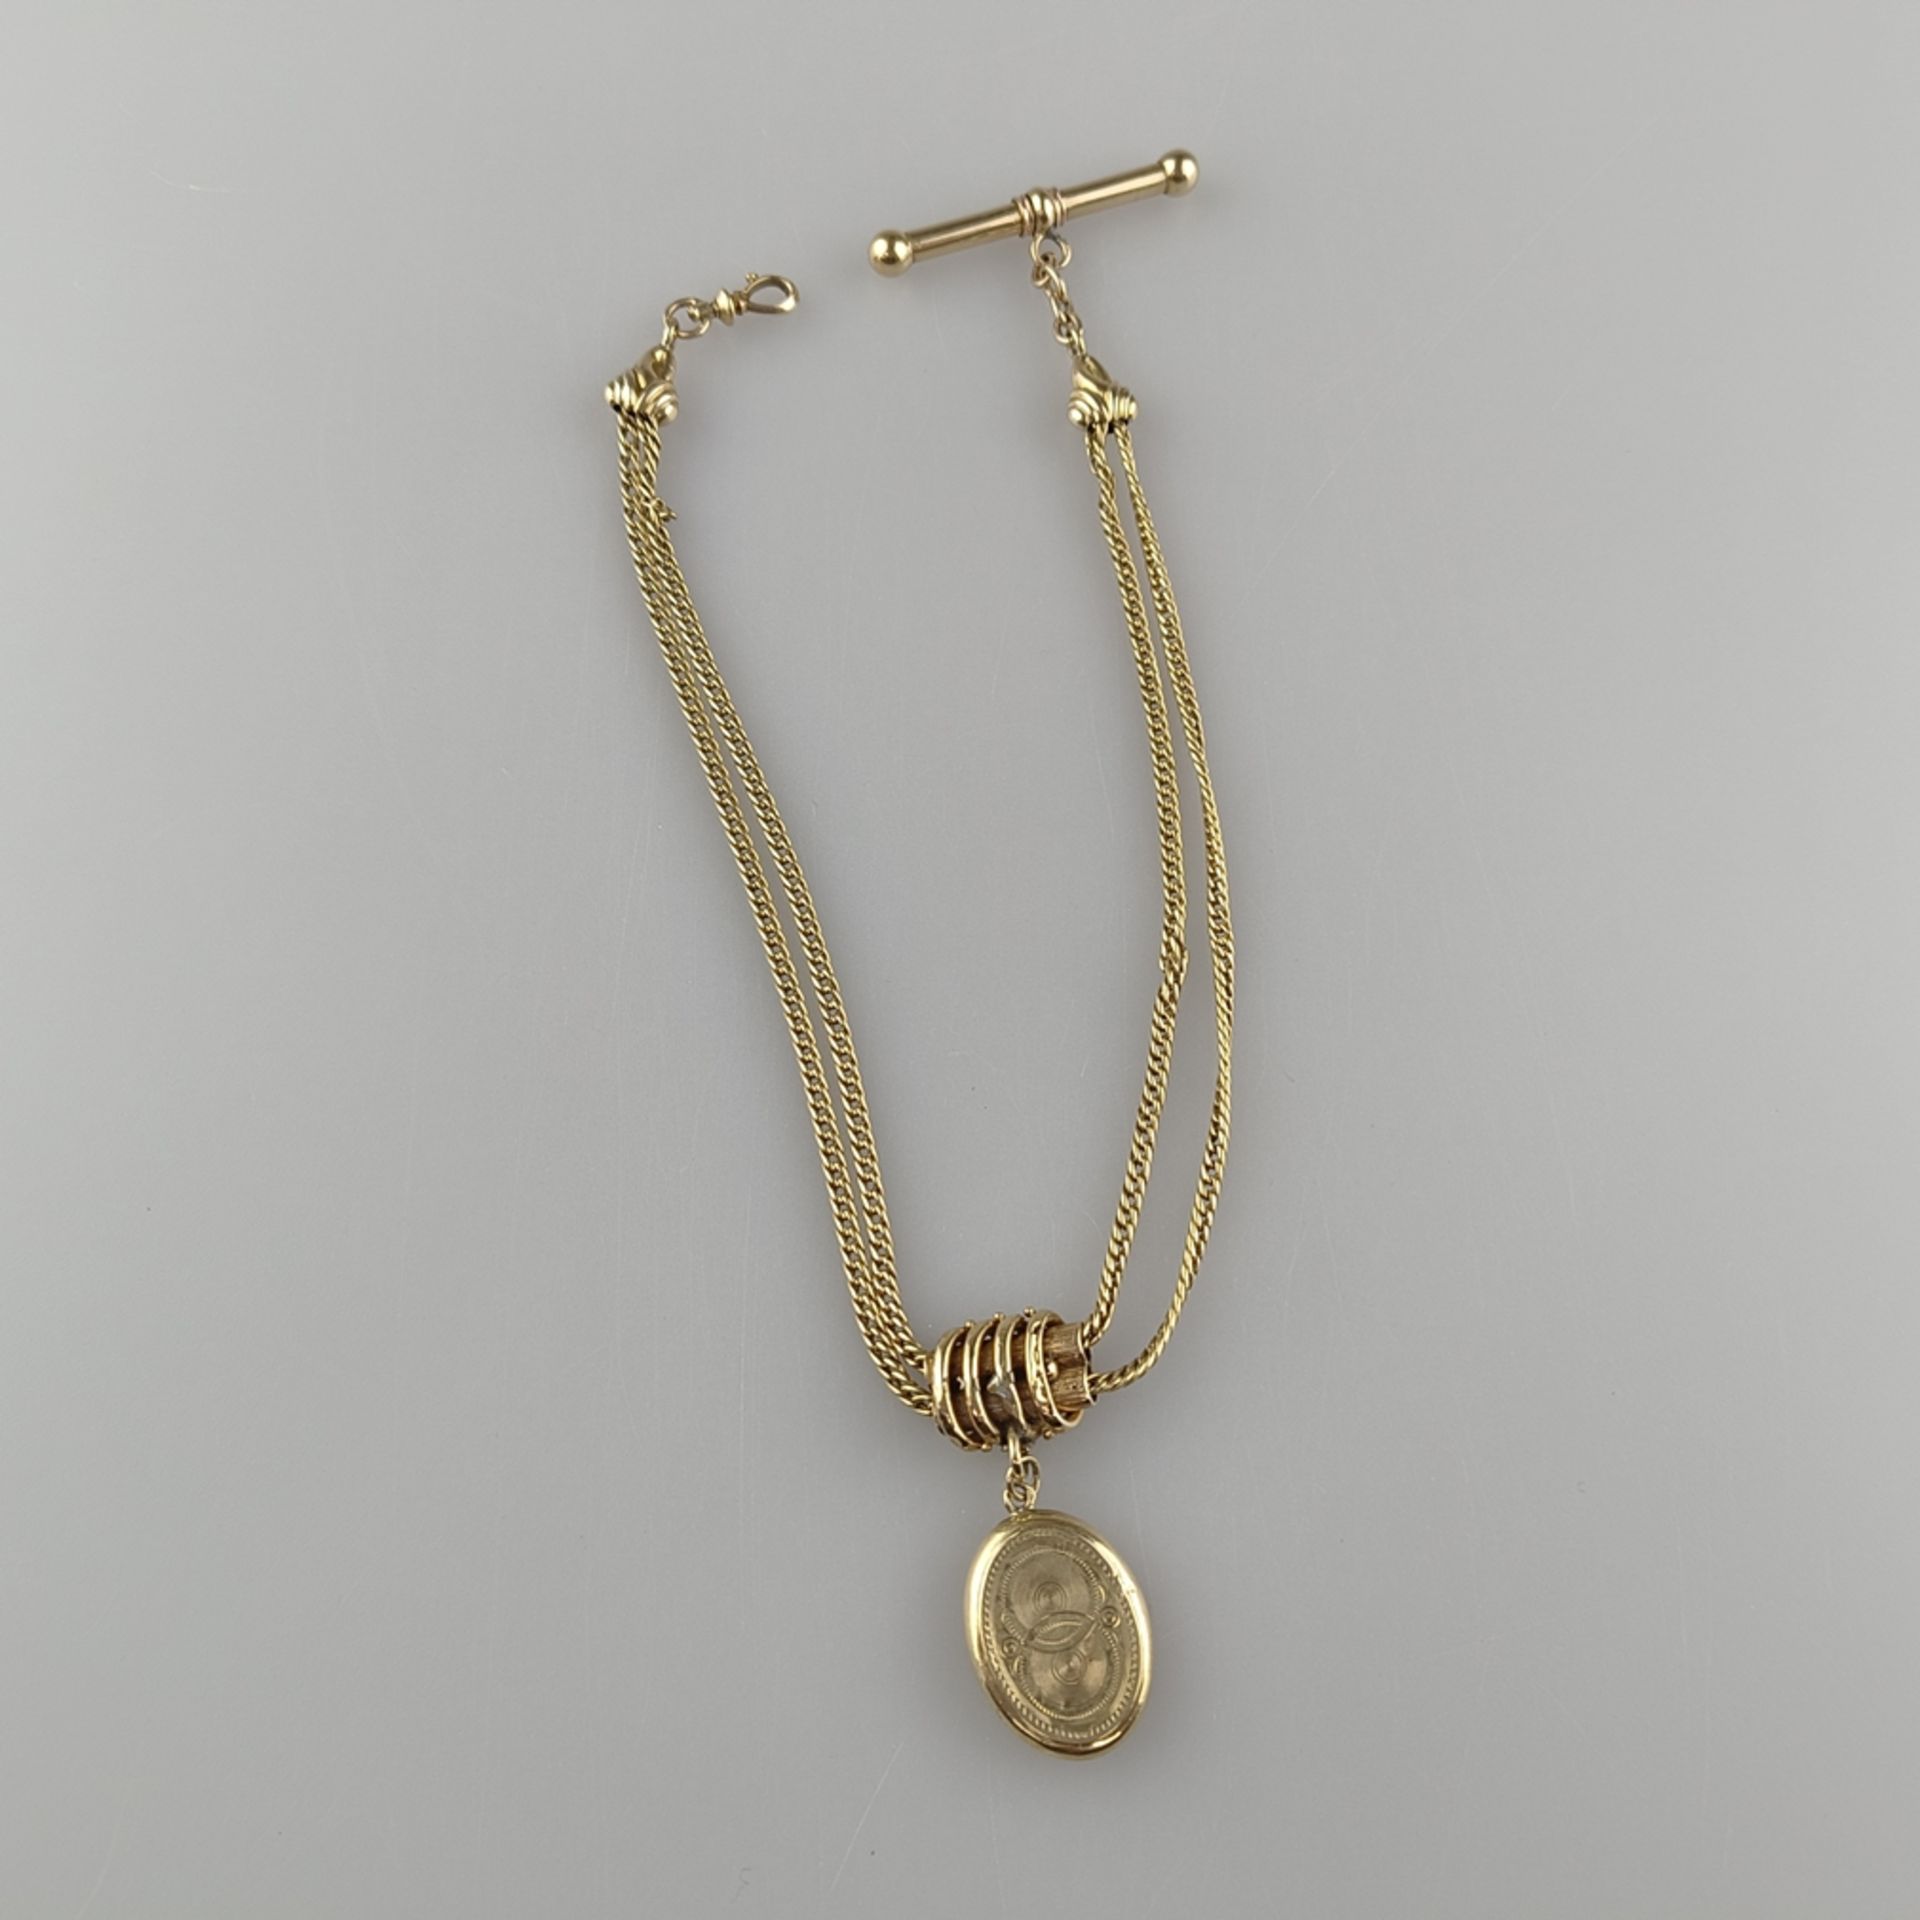 Taschenuhren-Knebelkette - 14K Gelbgold (585/000), mit ovalem Medaillonanhänger aus Schaumgold, L.